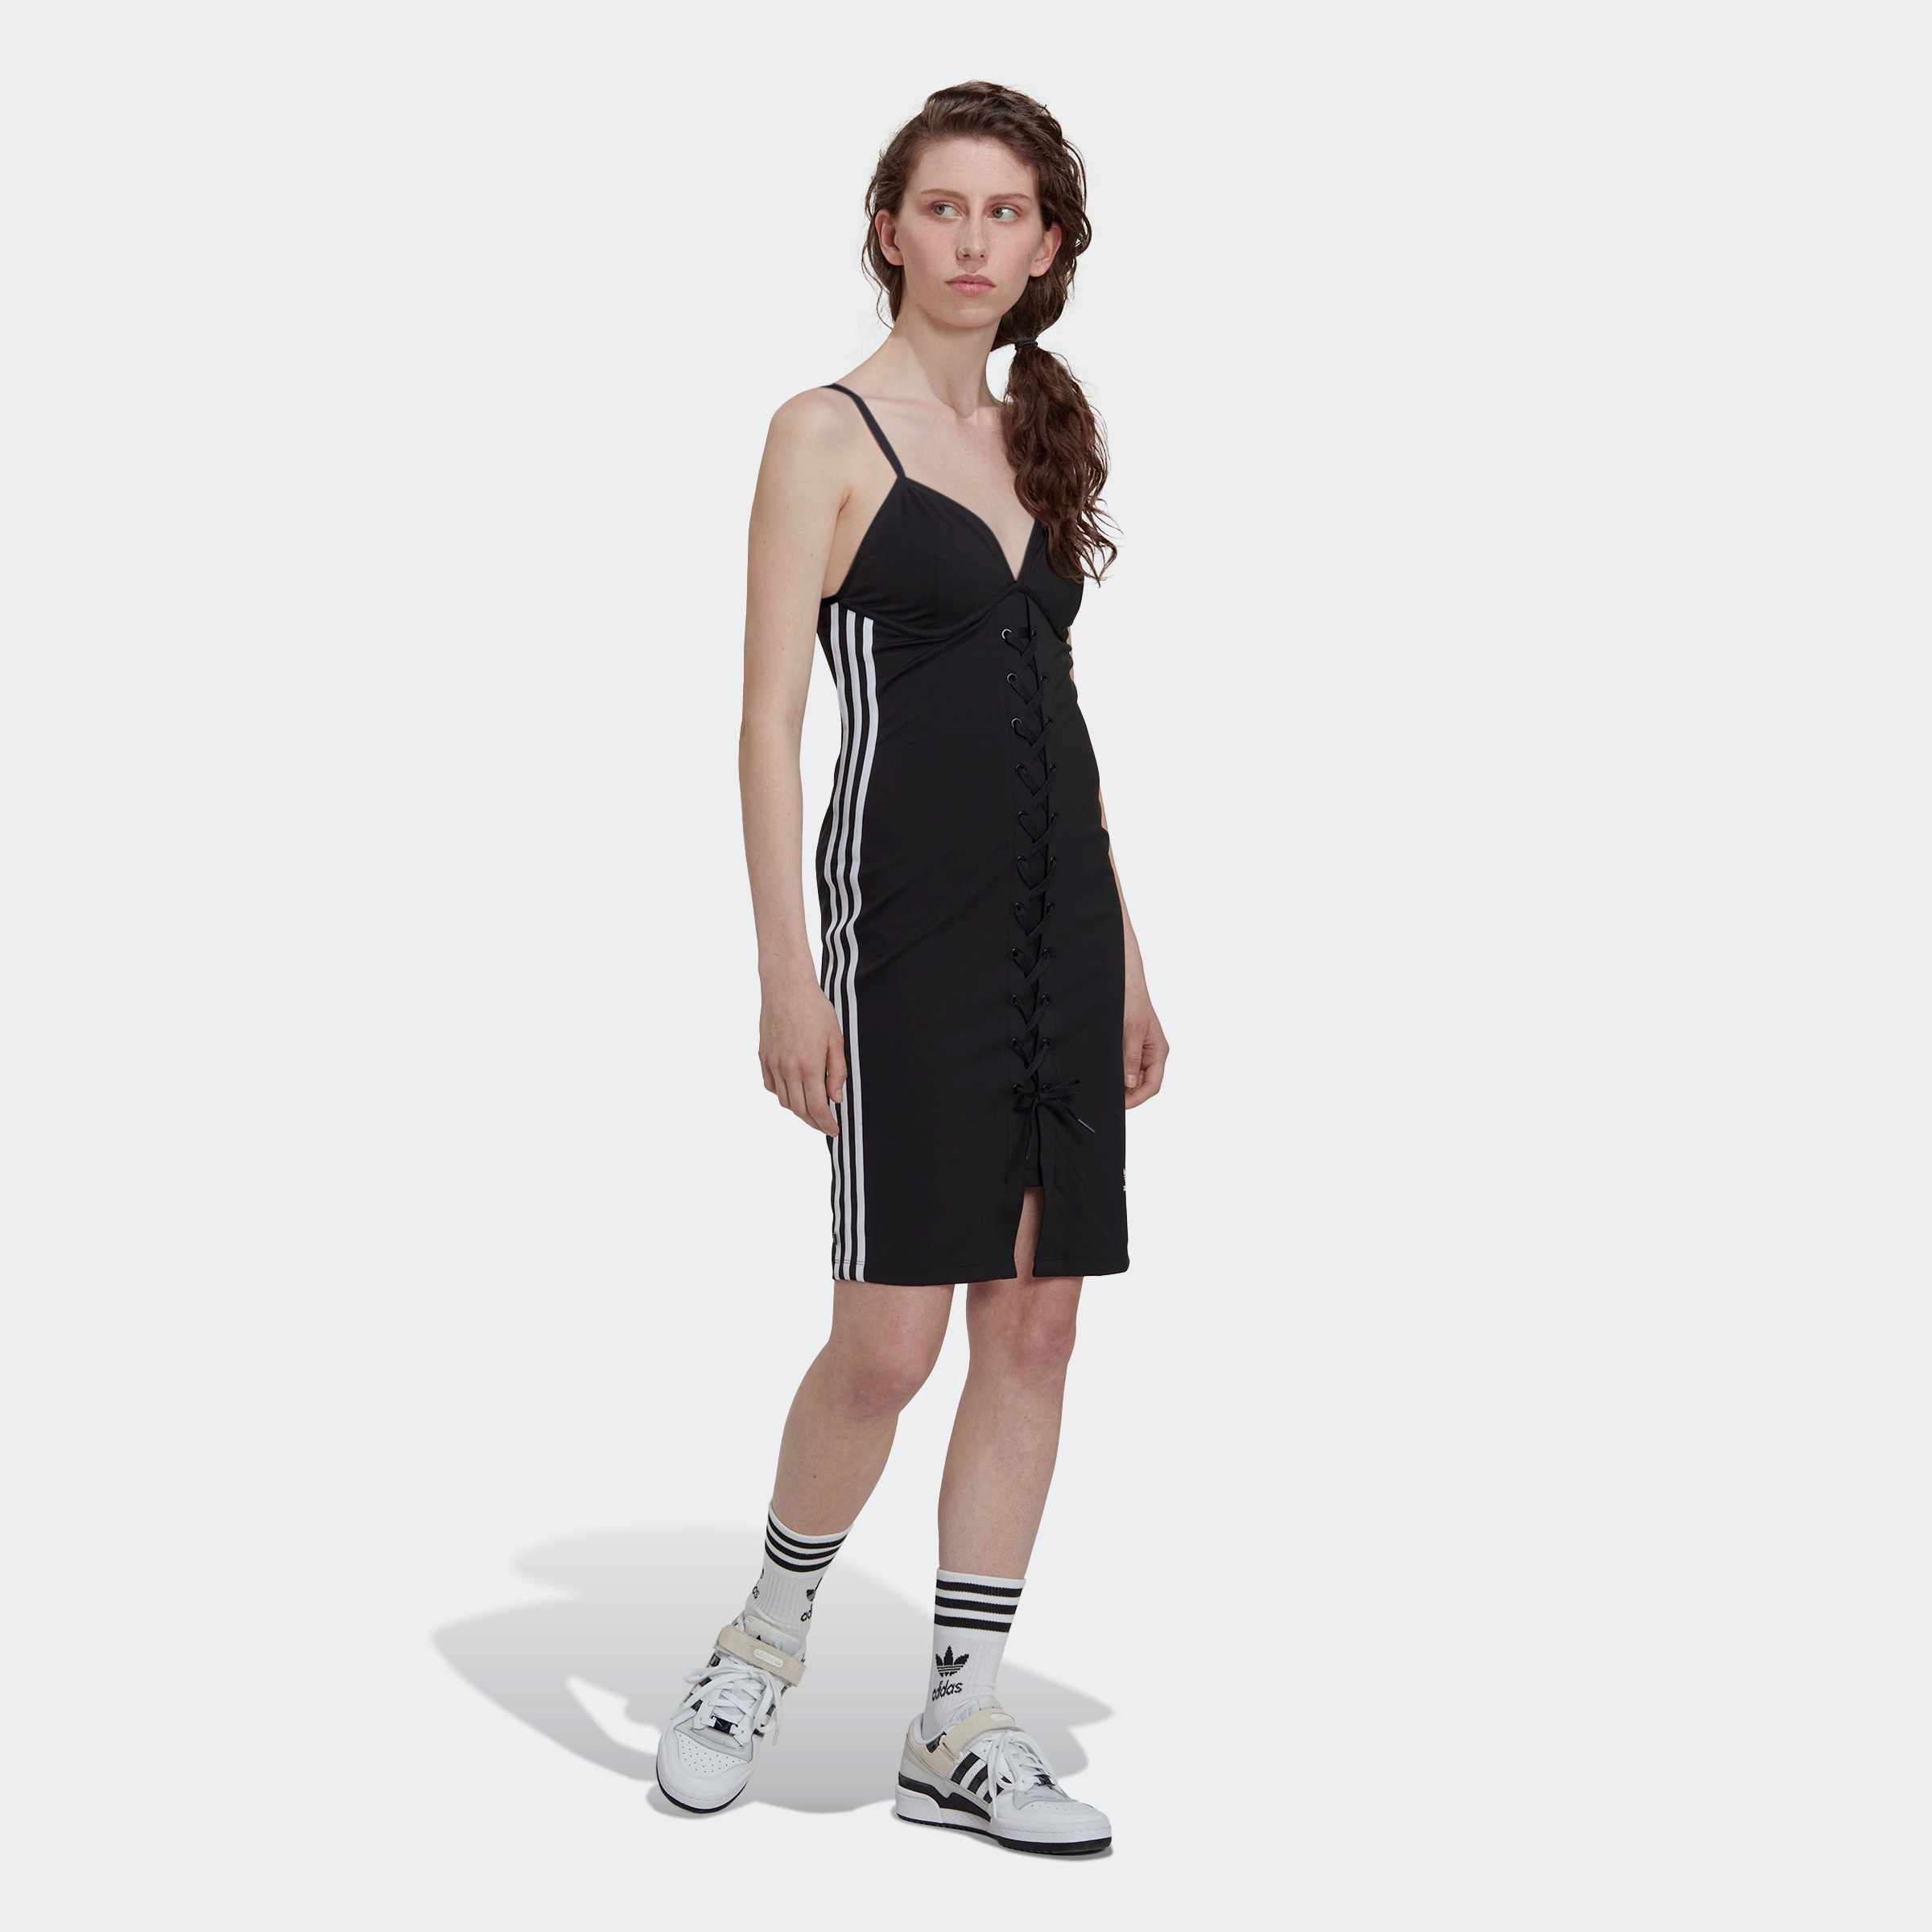 versandkostenfrei STRAP ORIGINAL »ALWAYS KLEID« LACED Sommerkleid Originals adidas ♕ auf